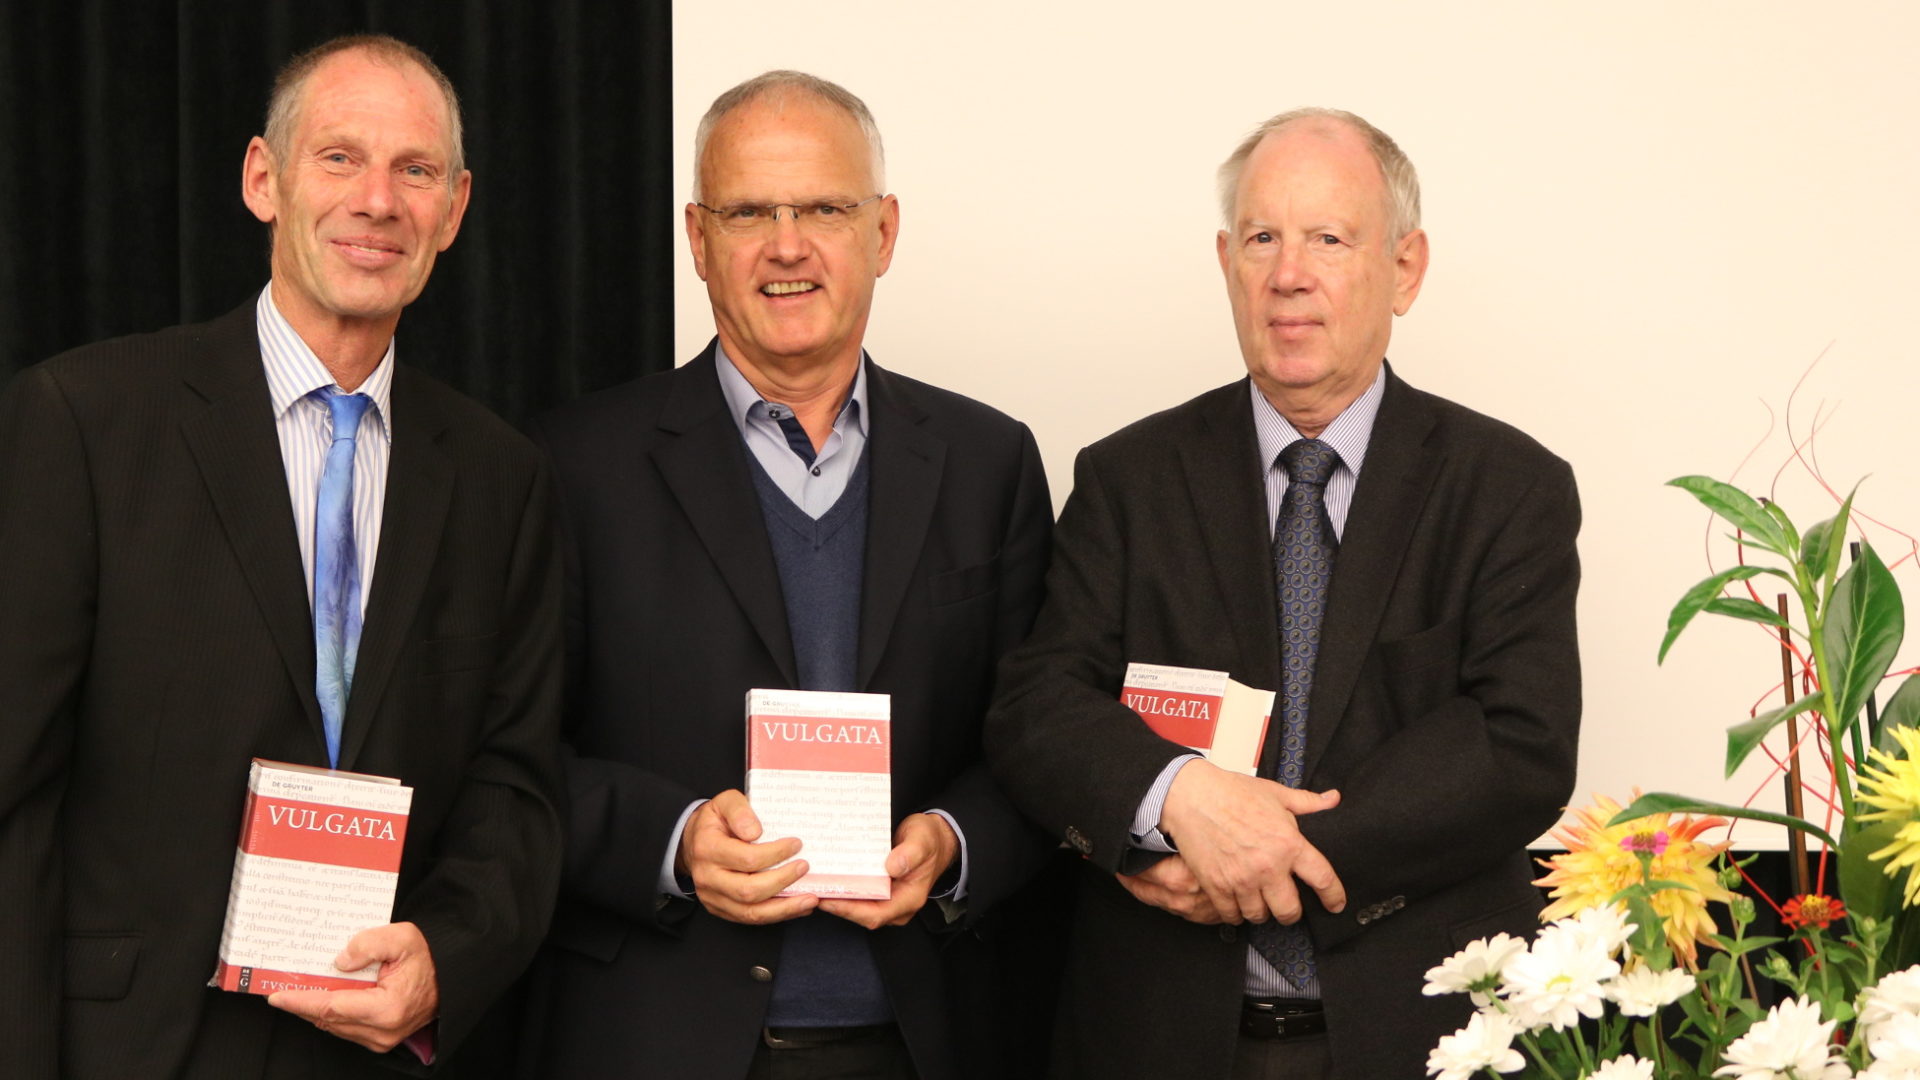 Die drei Herausgeber von links nach rechts: Andreas Beriger, Michael Fieger und Widu-Wolfgang Ehlers